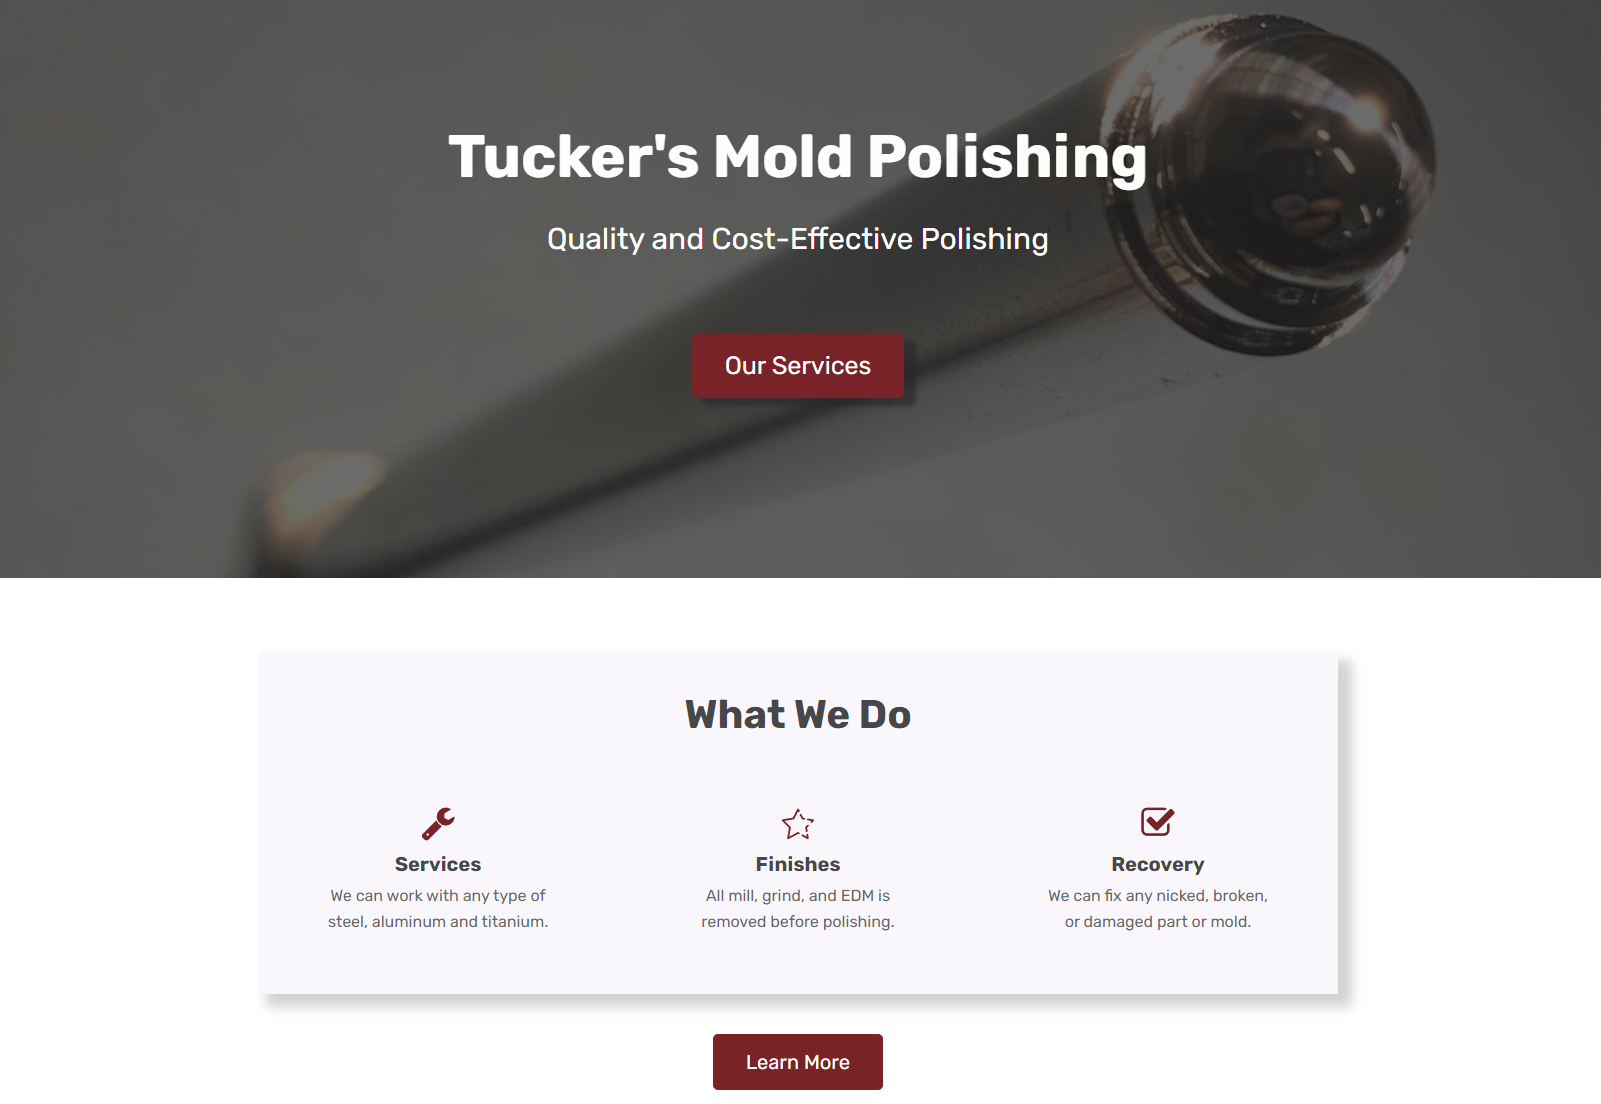 Tuckers Mold Polishing website